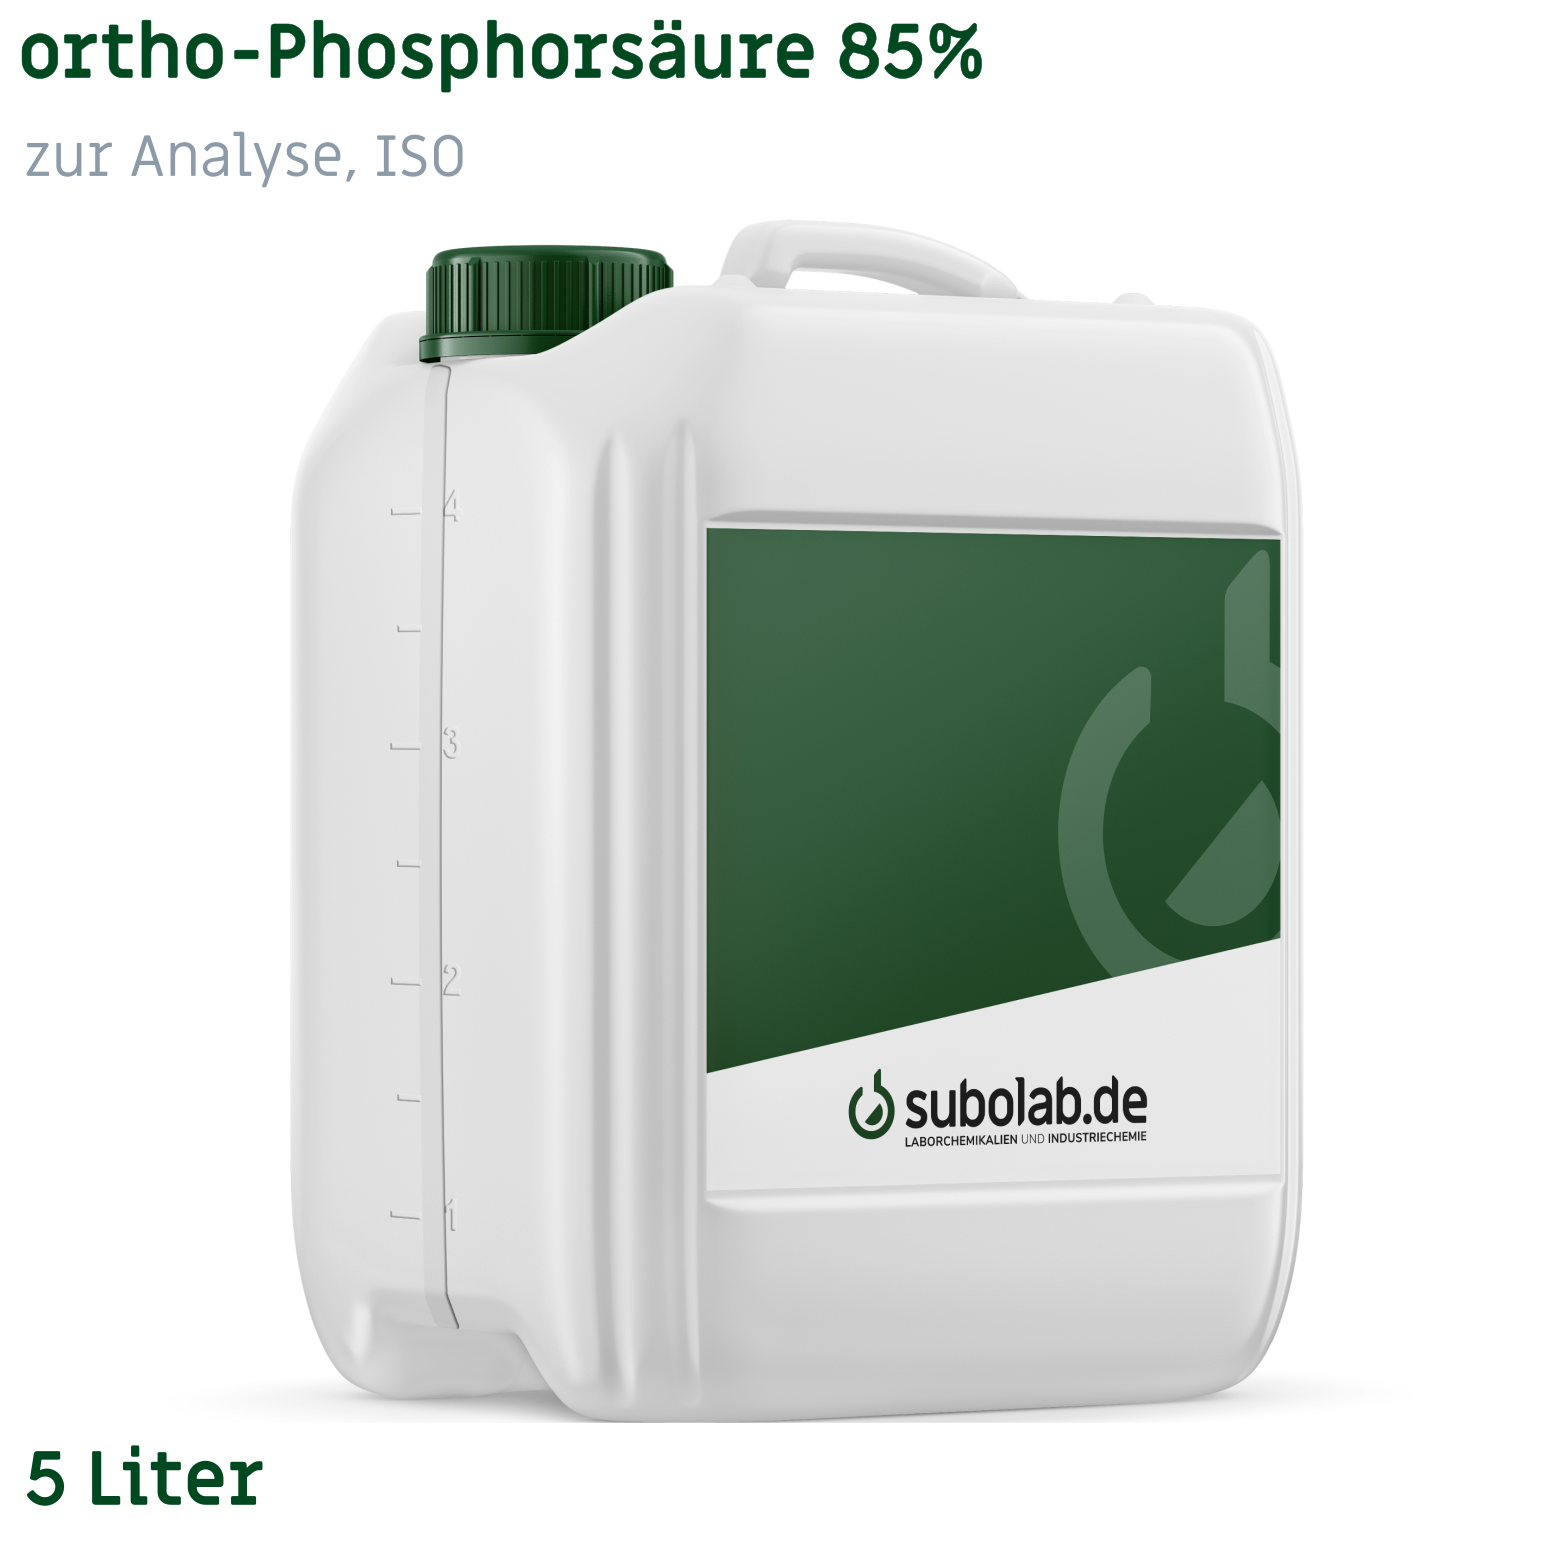 Bild von ortho-Phosphorsäure 85% zur Analyse, ISO (5 Liter)